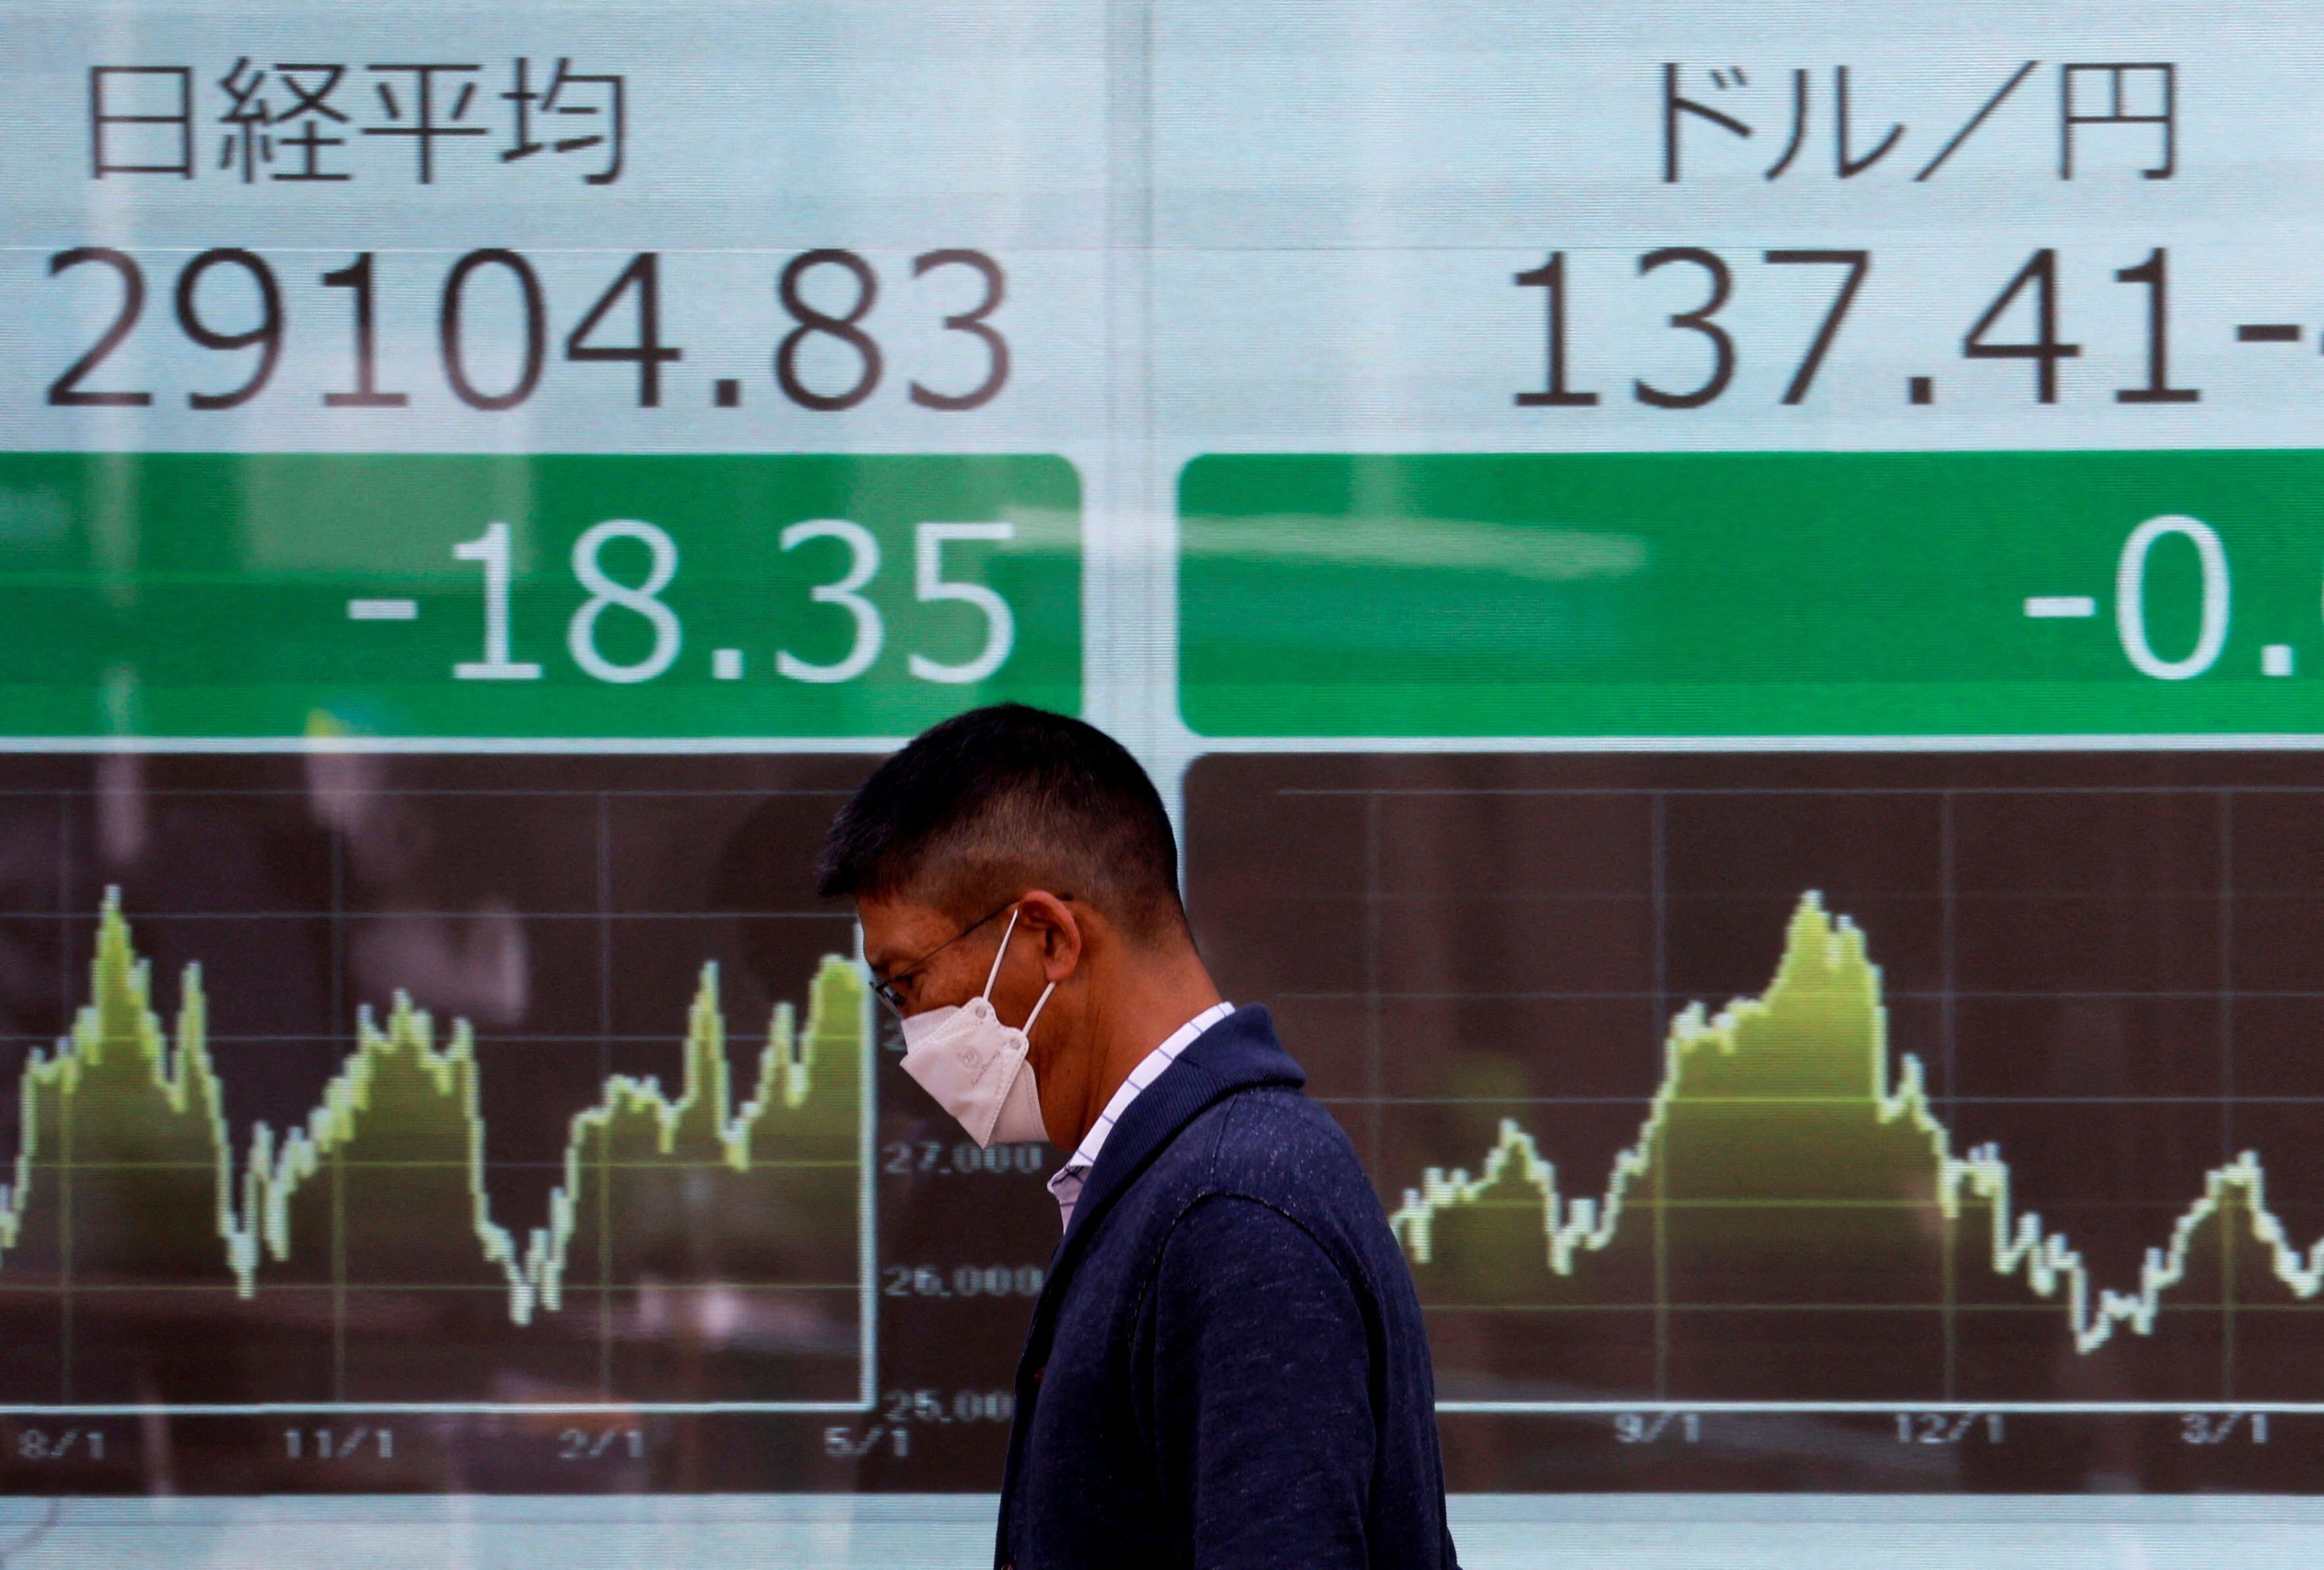 Un hombre pasa junto a un monitor eléctrico que muestra el promedio de acciones Nikkei y el tipo de cambio del yen japonés frente al dólar estadounidense (REUTERS/Issei Kato/Fotografía de archivo)